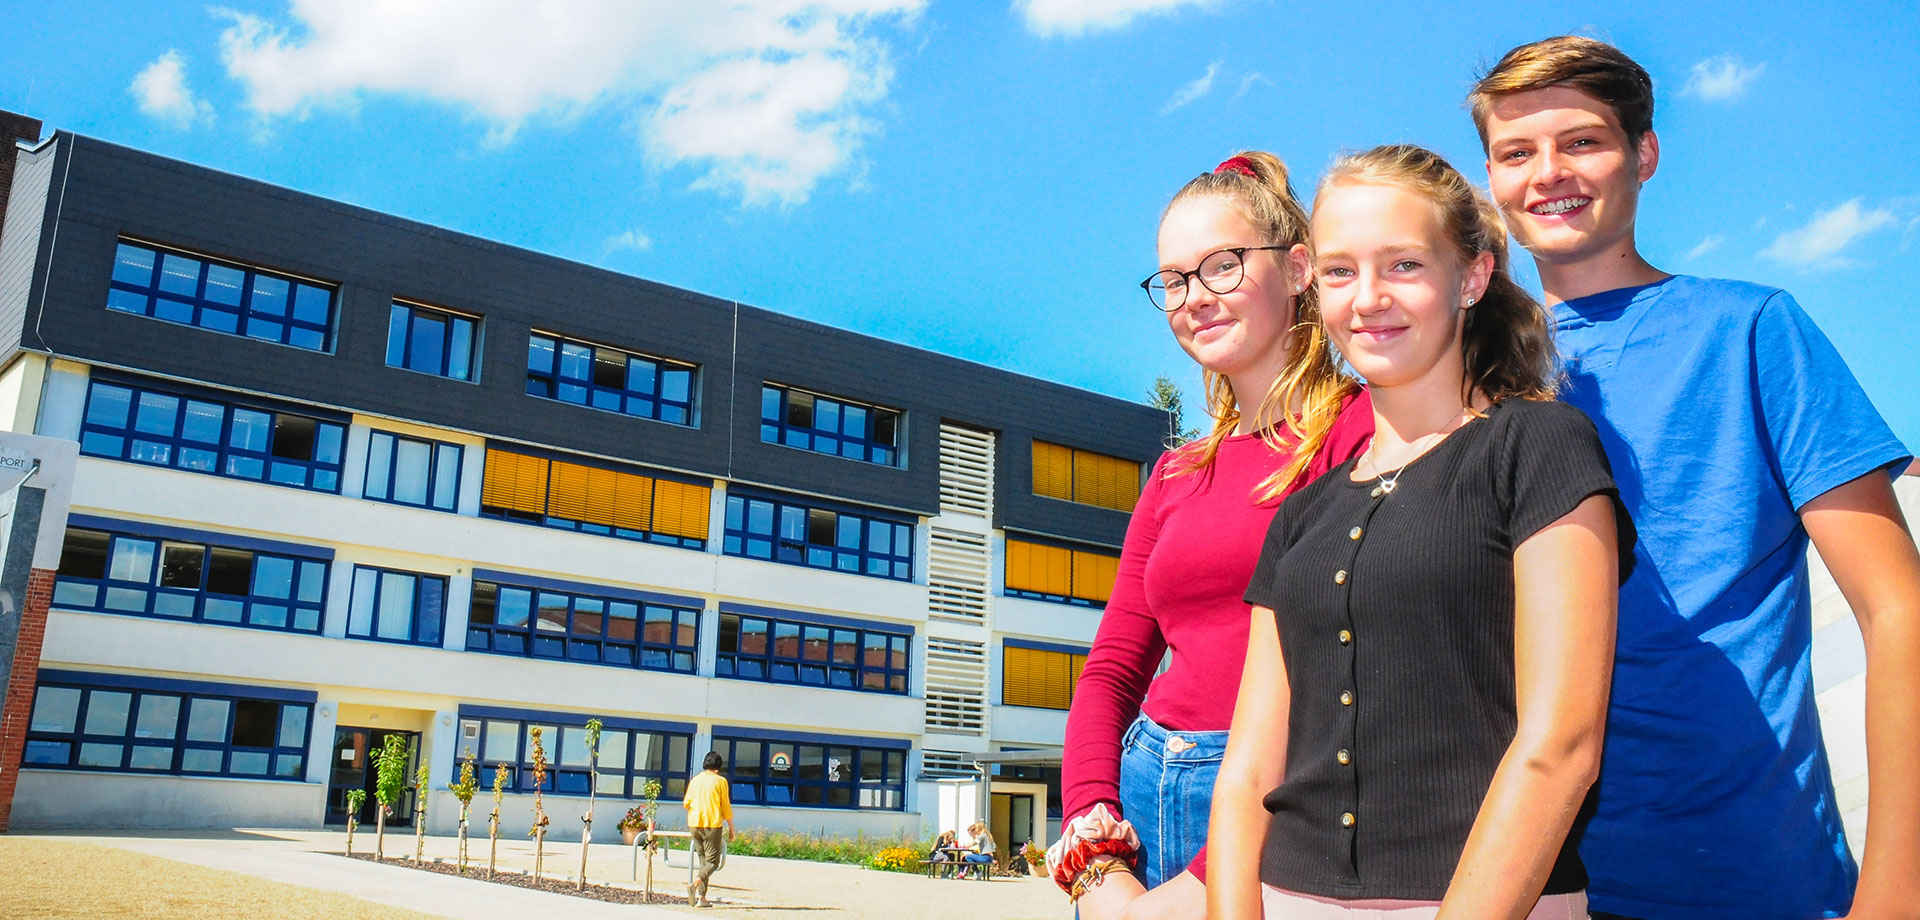 DPFA-Regenbogen-Gymnasium Augustusburg: Zwei Mädchen und ein Junge stehen auf dem Schulhof mit dem Schulgebäude im Hintergrund.